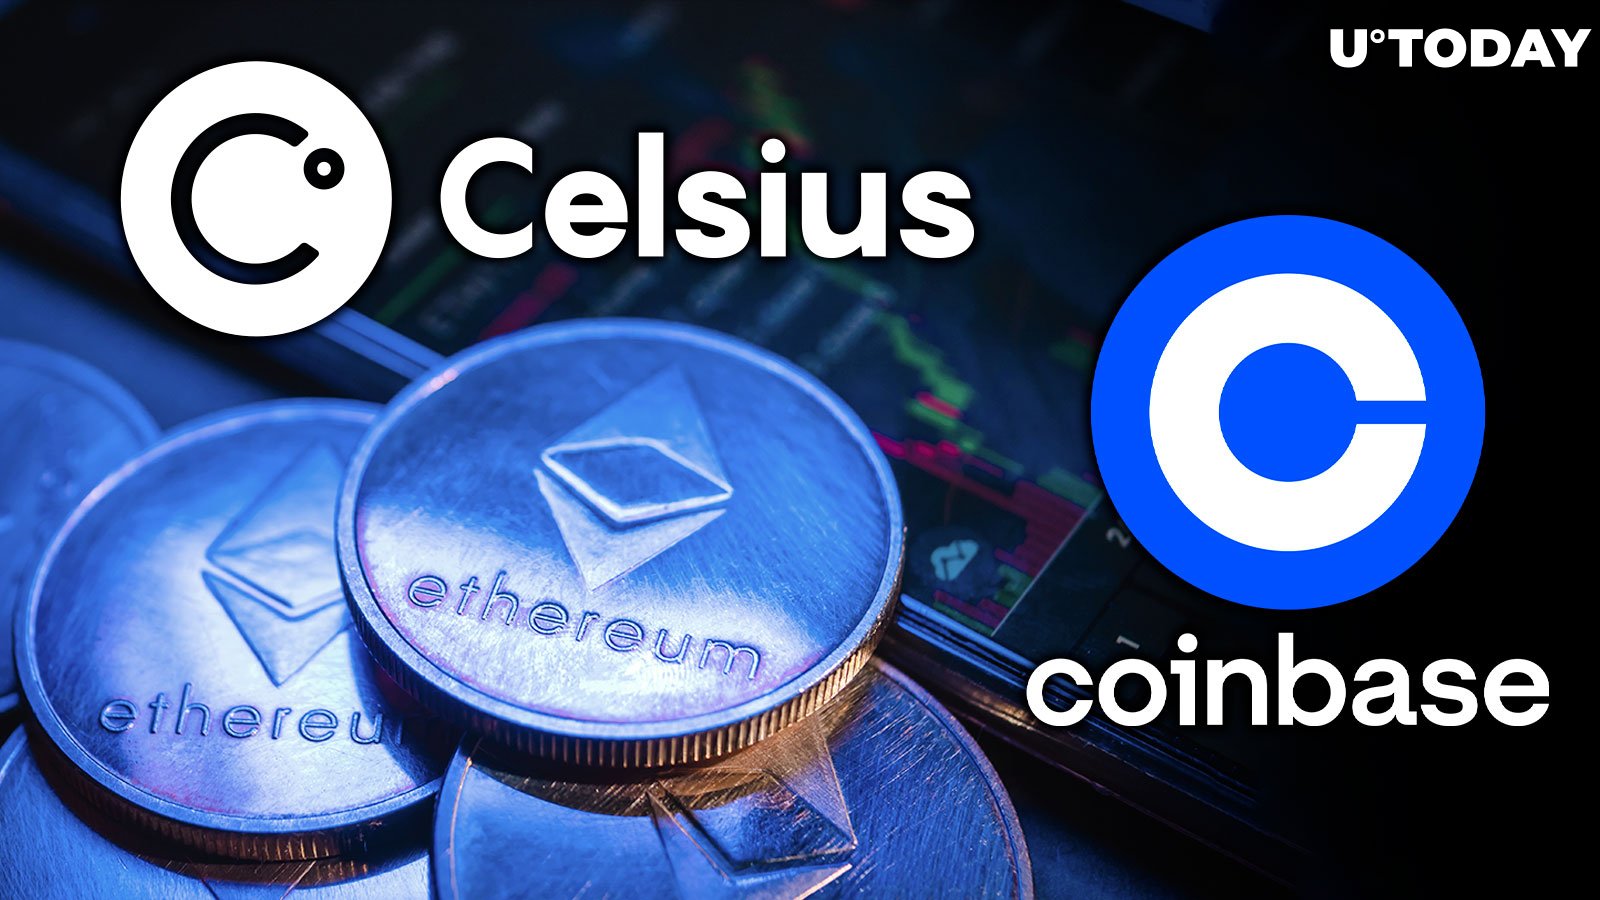 Celsius brengt voor $40 miljoen aan Ethereum uit op Coinbase - Hoe zal de prijs reageren?